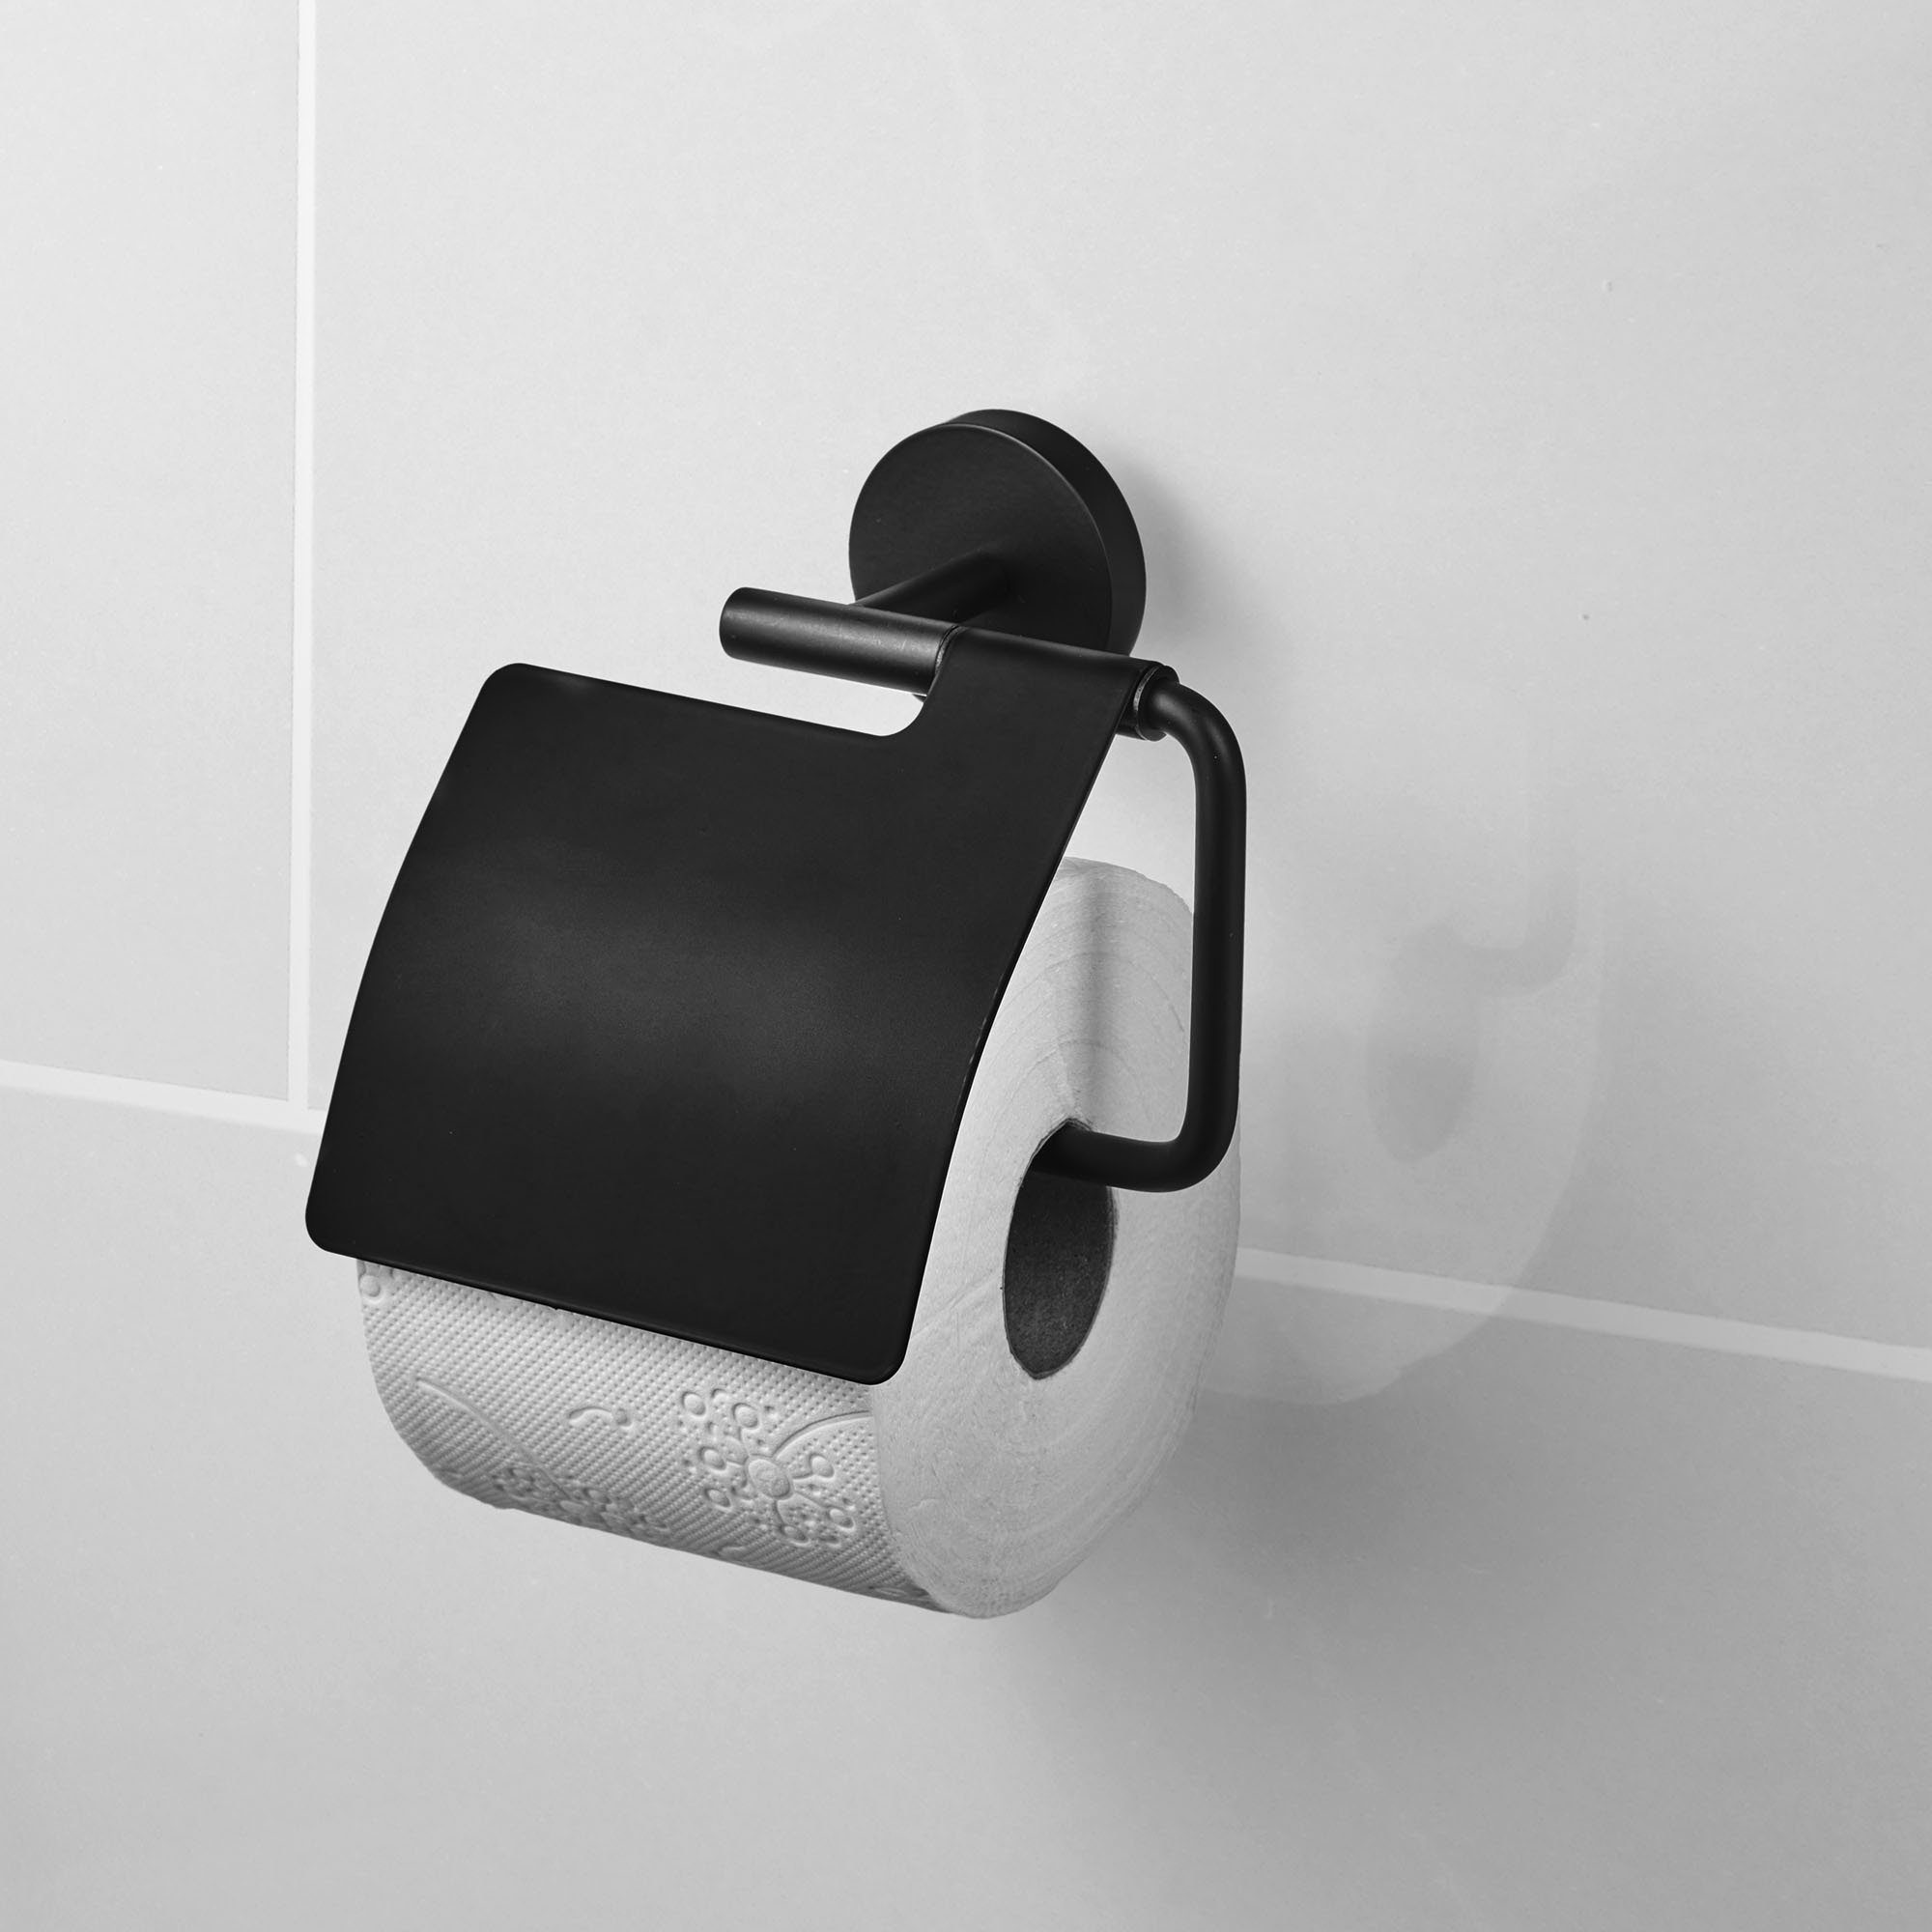 Bath Toilettenpapierhalter Schwarz Amare Toilettenpapierhalter